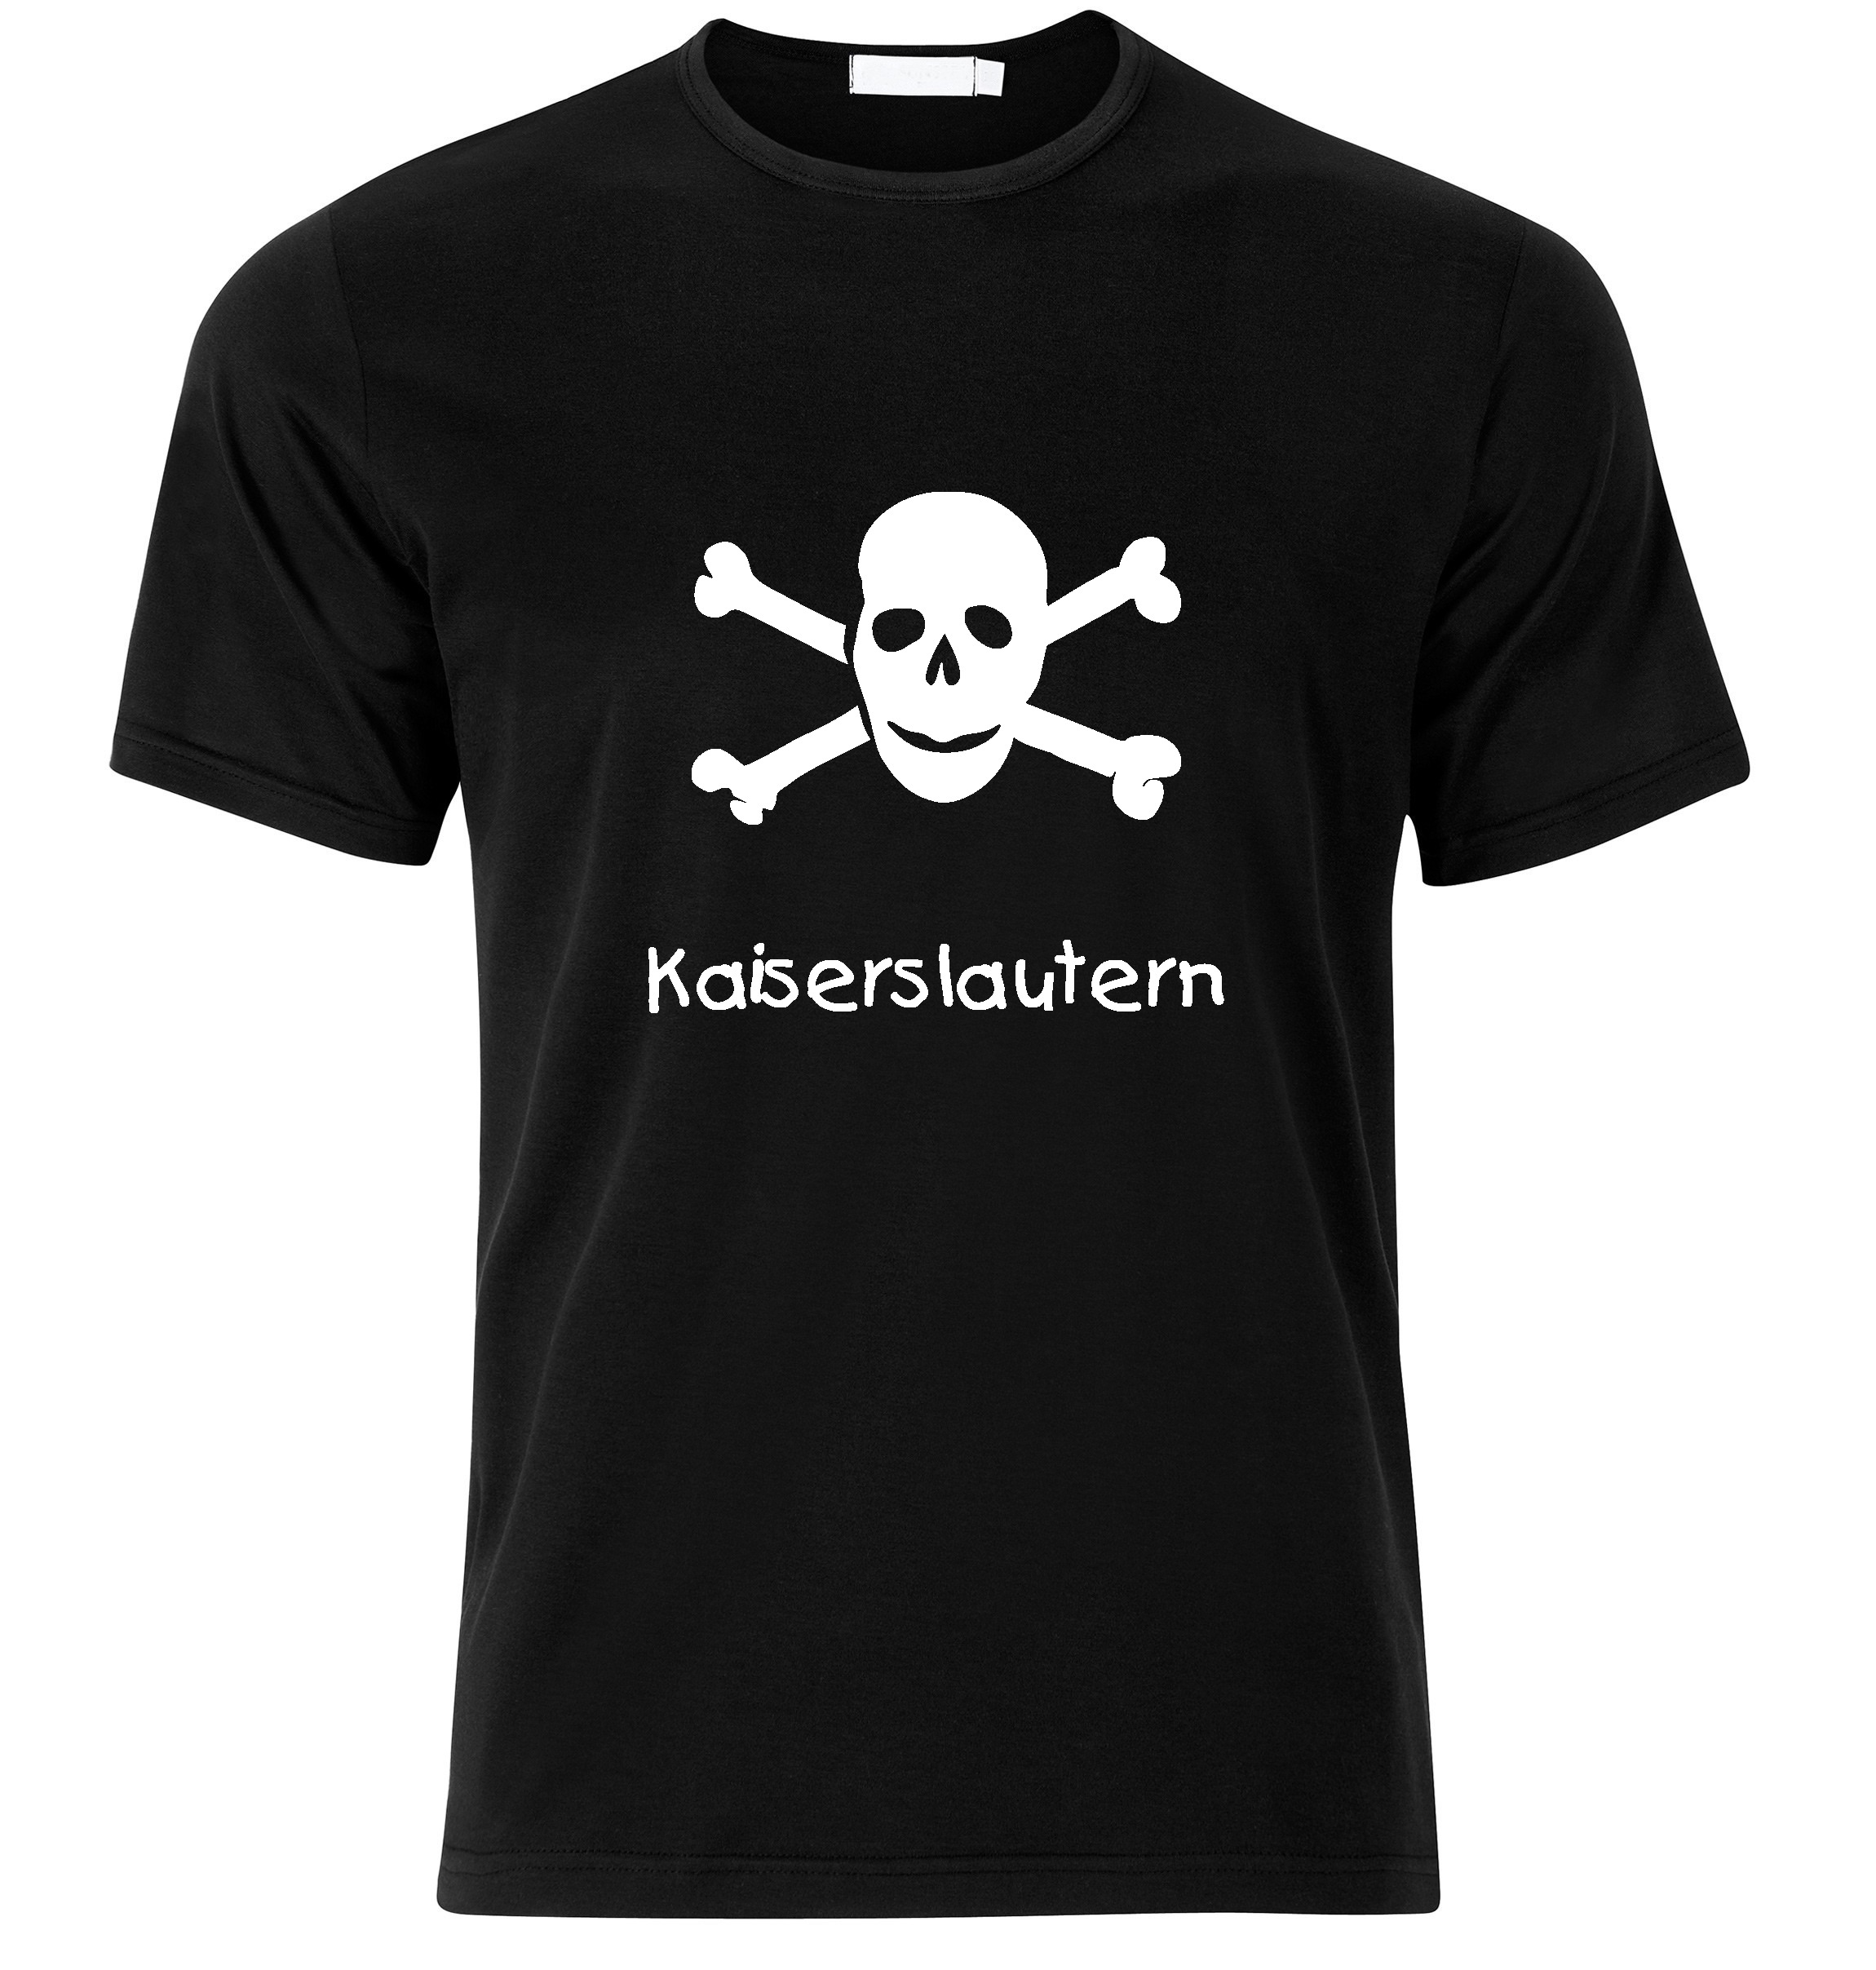 T-Shirt Kaiserslautern Jolly Roger, Totenkopf